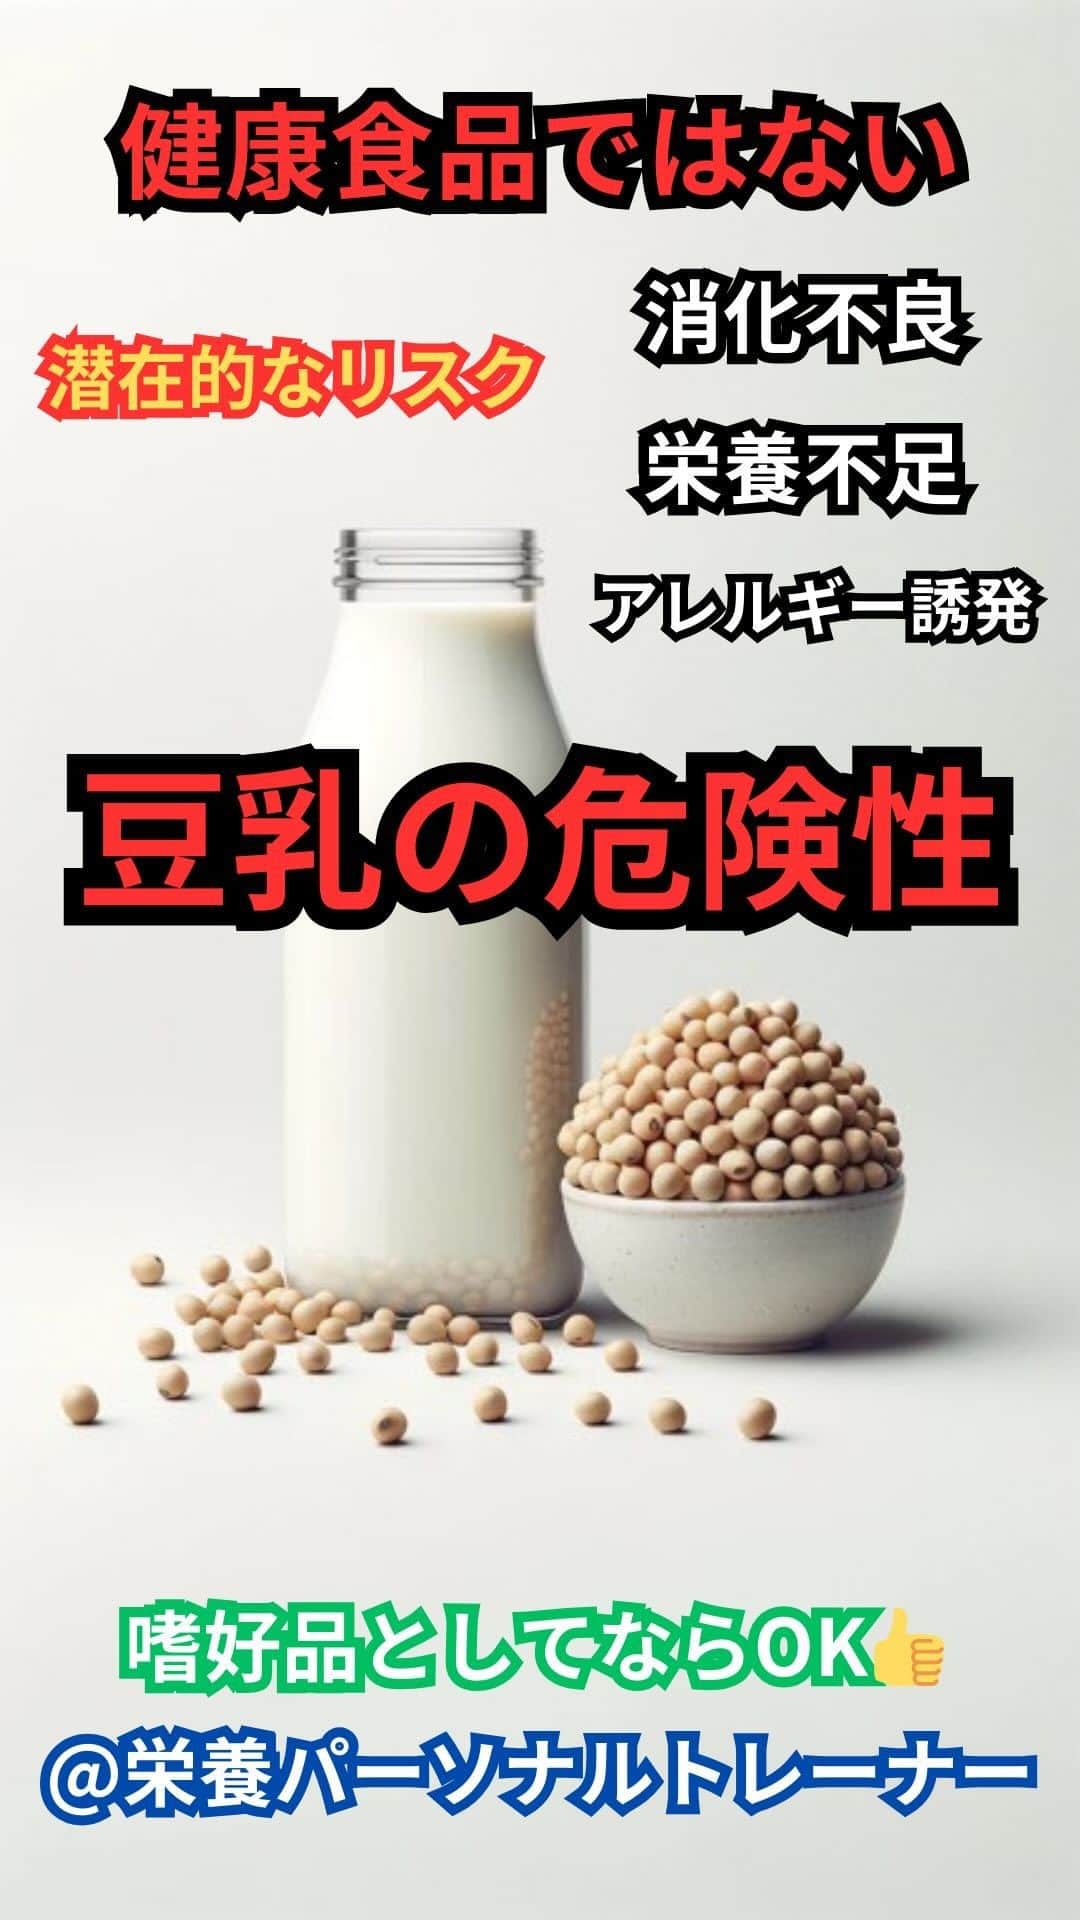 村上雄大【オーガニックサラリーマン】のインスタグラム：「【過剰摂取は要注意】🚨 ⚠️豆乳から栄養を摂取しようと思わないでください  海外では  “soy free” ソイフリー というワードがあります。しかし、日本ではソイフリーというワードは滅多に見かけません🧐  豆乳の害については、過去にも話してきたのですでにご存知の方も多いはず。僕は中学2年生から食事を気をつけ始め、牛乳もたくさん飲むようになりました。しかし、市販の牛乳は身体にはマイナス面が多いと知り、当時の浅い知識で豆乳がヘルシーでたんぱく質も豊富でビタミンやミネラルも摂取できるという情報を得て飲み始めました。今思えば、僕の肌はそこから一気にニキビ肌へと変わって行きました。それまではニキビとは無縁だったのですが、ちょうど豆乳を飲み始めた時と完全に重なっているのです。もちろん、豆乳だけが要因ではないとは思いますが、豆乳を飲むと毎回喉が痒くなってたのを思い返すと、何かしら身体はサインを送ってくれてたんだなと、、、しかし、身体に良いと信じてたので、飲み続けていました。高校2年生の頃に、豆乳は亜鉛の吸収を妨げるということを知り、そこからきっぱりやめましたが、また僕は違うものに手を出してしまっていました笑。またその話は別の投稿で笑  ✅豆乳は大豆から作られる飲料 植物性たんぱく質、ビタミン、ミネラルなどを含んでいる豆乳。しかし、一部の人にとっては問題を引き起こす可能性もあり、決して、豆乳からこれらの栄養素は摂取しようとは思わないようにしてください。  ✅アレルギー誘発 大豆は一般的なアレルゲンの一つであり、大豆アレルギーの人は豆乳を摂取するとアレルギー反応を示すことがあります。しかし、大豆自体にアレルギー反応を起こすよりも、大豆以外のものにアレルギー反応を引き起こす可能性が高まります。厳密に言うとアレルギー反応のようなもので、アレルギーとはまた違うものの可能性はあります。  また、僕自身もそうだったのですが、豆乳を飲んでいた中学3年生の終わりくらいから高校2年生までは、花粉症がひどく、しょっちゅう下痢やニキビ、肌あれが頻繁にある、極度の顔のむくみなどがすごかったです。それが、高校2年生の時に豆乳は身体に良くないと知ってやめてから、それらの症状がかなりおさまりました。  僕が栄養パーソナルをしたクライアントさんも、みんな同じように不調が改善される方が多いです。  ✅甲状腺機能障害 大豆に含まれるゴイトロゲンは甲状腺機能に影響を与える可能性があります。特に、ヨウ素摂取が不十分な場合や甲状腺機能低下に不安がある方は、大豆製品の過剰摂取が甲状腺機能障害を引き起こす可能性が指摘されています。  ✅栄養素の吸収阻害 大豆に含まれる反栄養素はたんぱく質の消化やミネラルの吸収を阻害する可能性があります。これにより、潜在的な栄養不足のリスクが高まります。  ✅ホルモンバランスへの悪影響 大豆のイソフラボンはエストロゲン様の効果を持つことが知られており、これがホルモンバランスに影響を及ぼす可能性があります。特に、女性のホルモン関連の健康問題や、乳幼児への悪影響が懸念されることがあります。  女性は特に特有の悩みを抱えてる方が多く、わざわざ健康だと思って牛乳から豆乳に変える方もいるのですが、牛乳の質が良ければ、牛乳の方が良いでしょう。  追加の情報やおすすめの大豆の摂取方法を知りたい方はコメント欄に  大豆  とコメントください✍️  #オーガニックサラリーマン #豆乳 #ソイフリー」